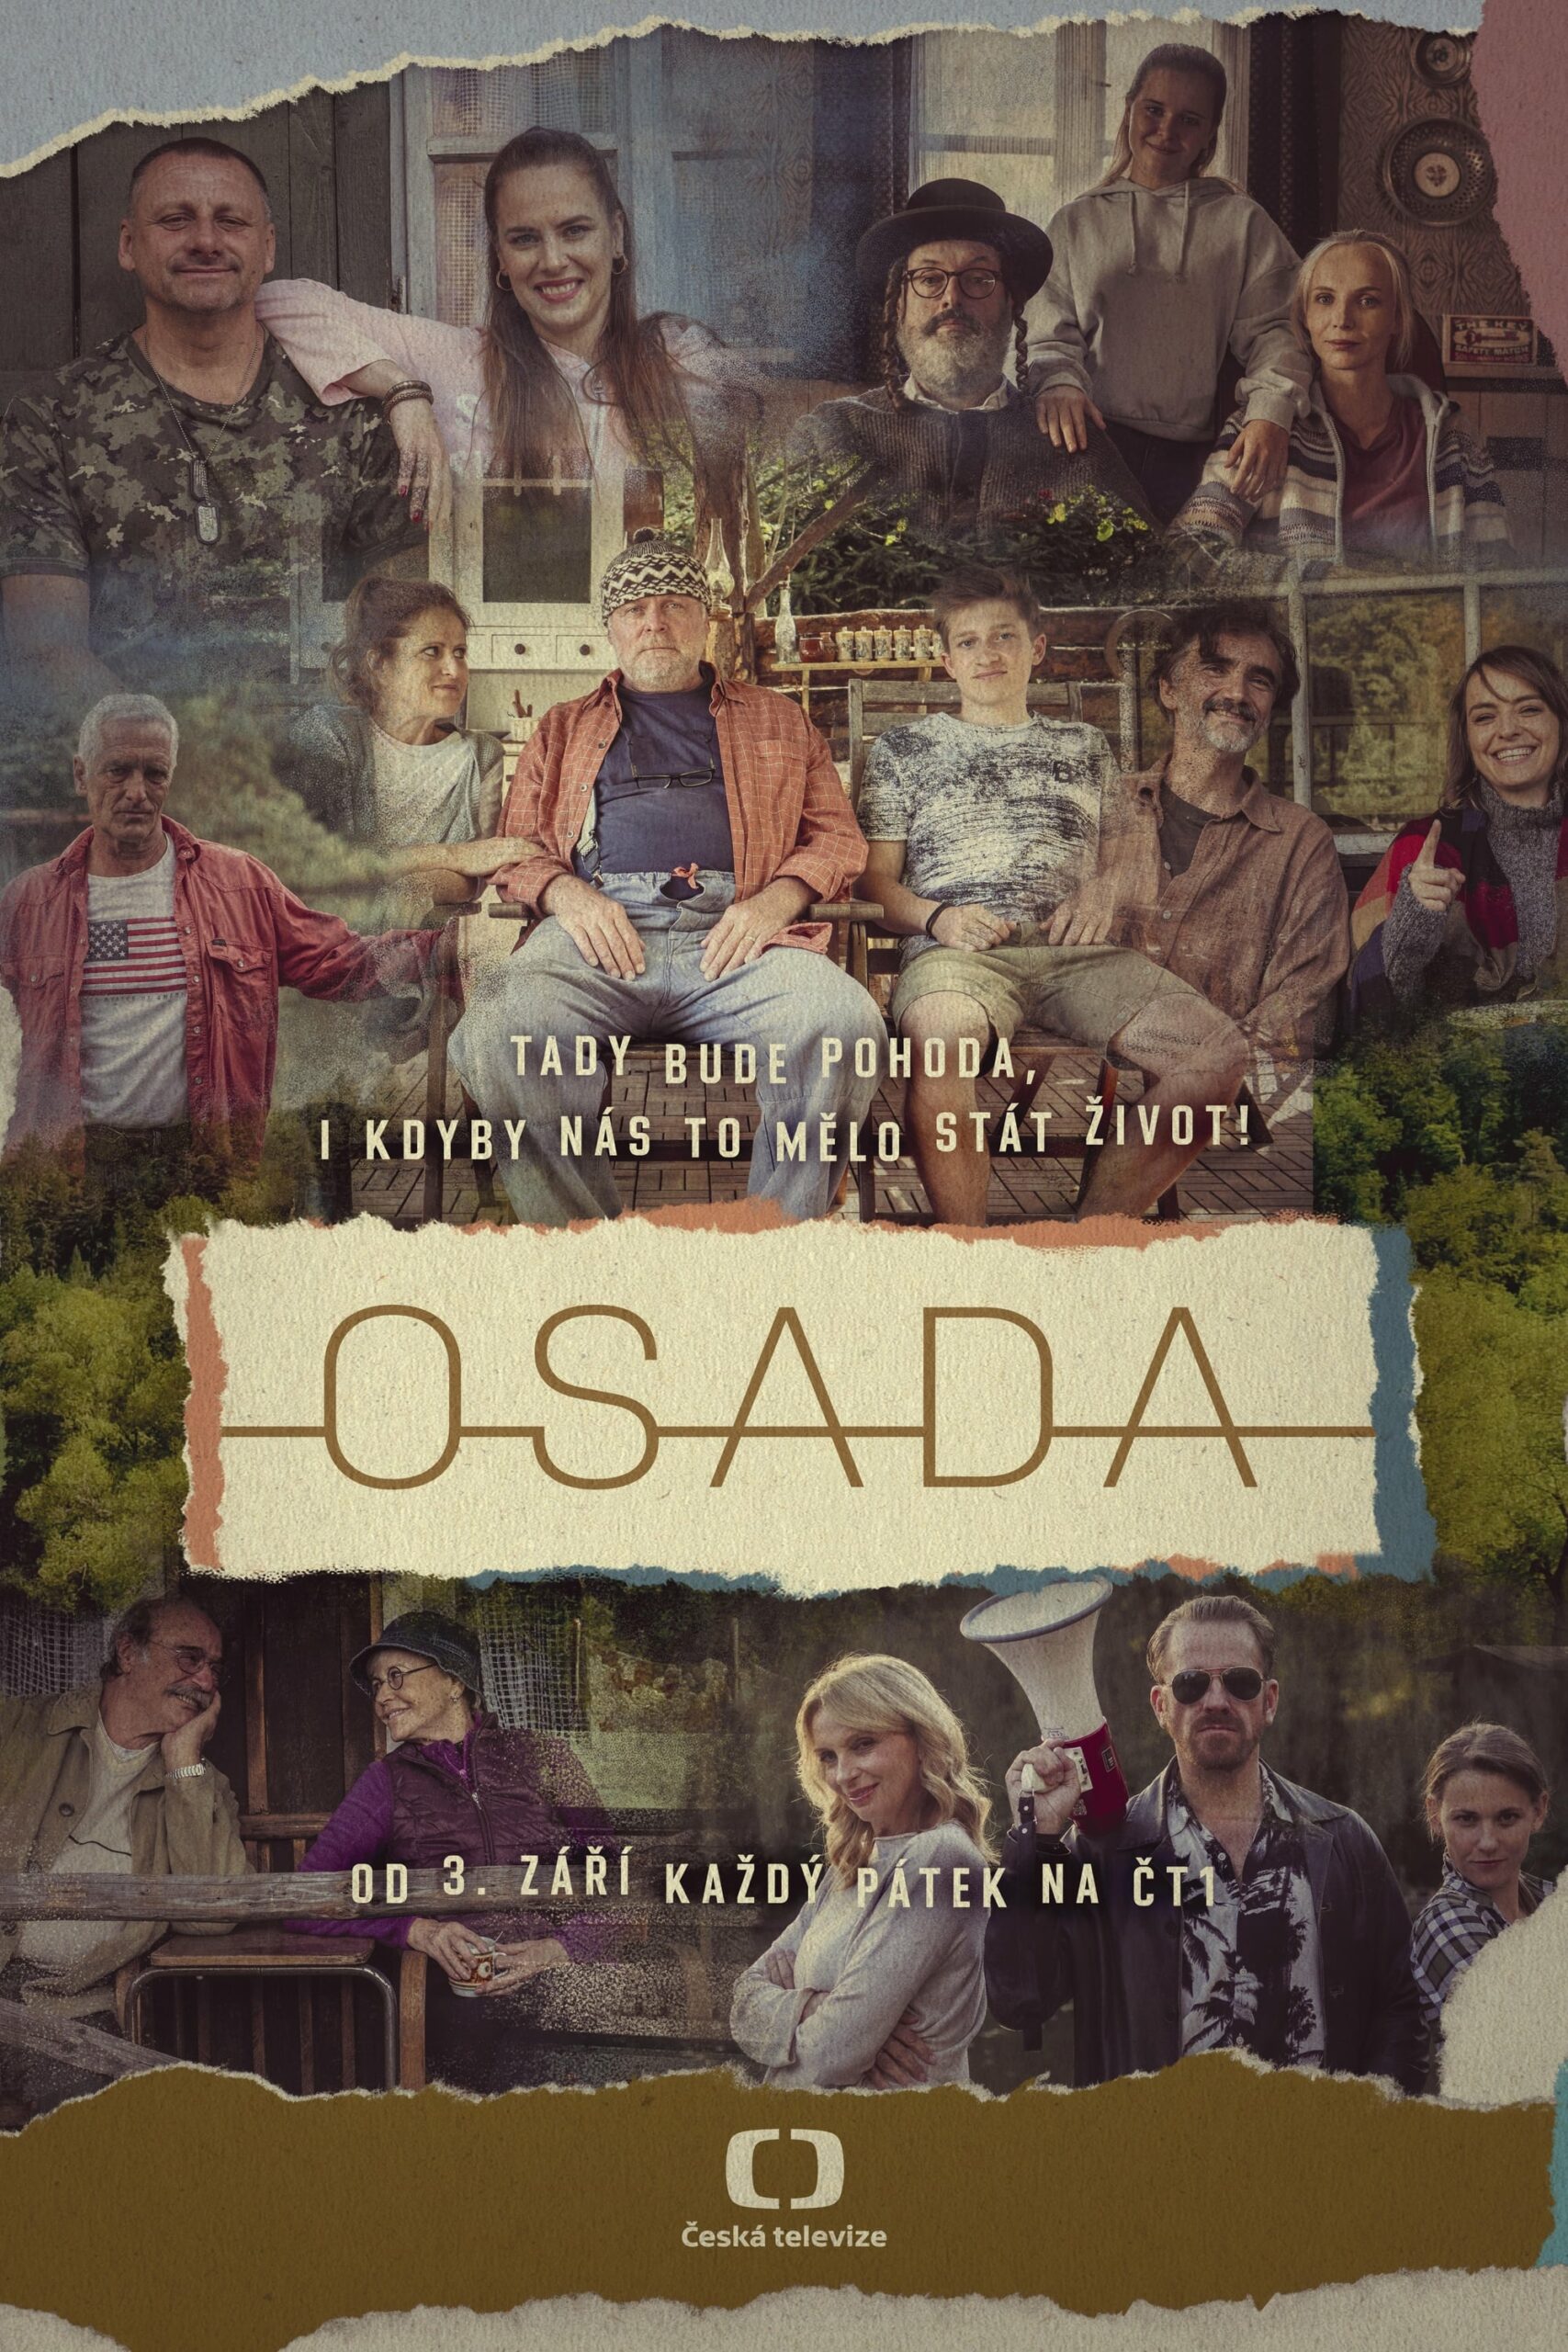 Plakát pro film “Osada”